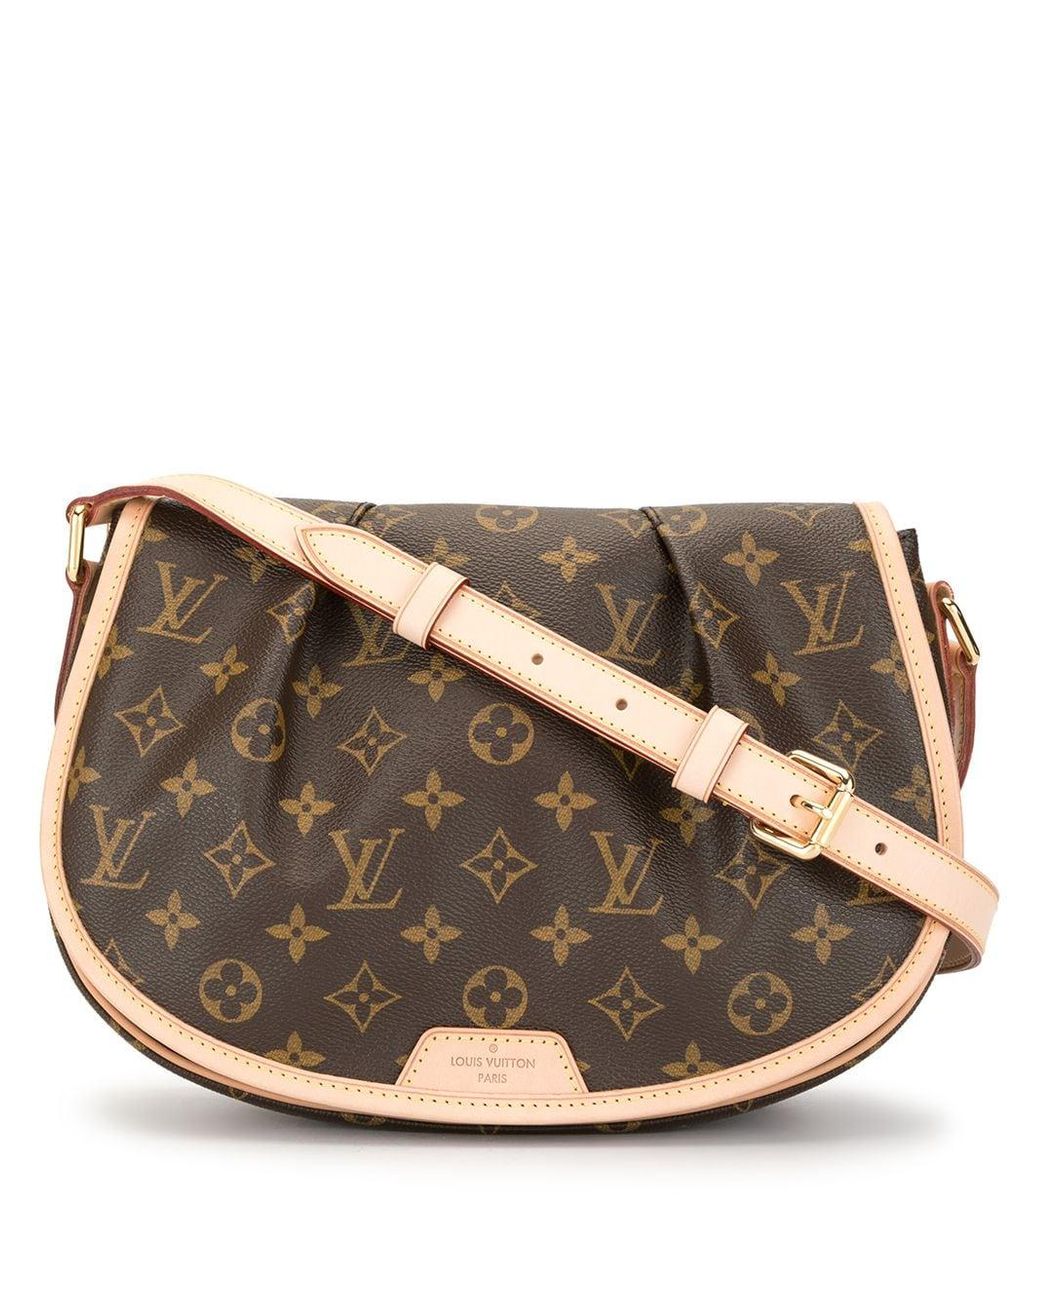 Louis Vuitton, Bags, Great Condition Lv Monogram Menilmontant Pm